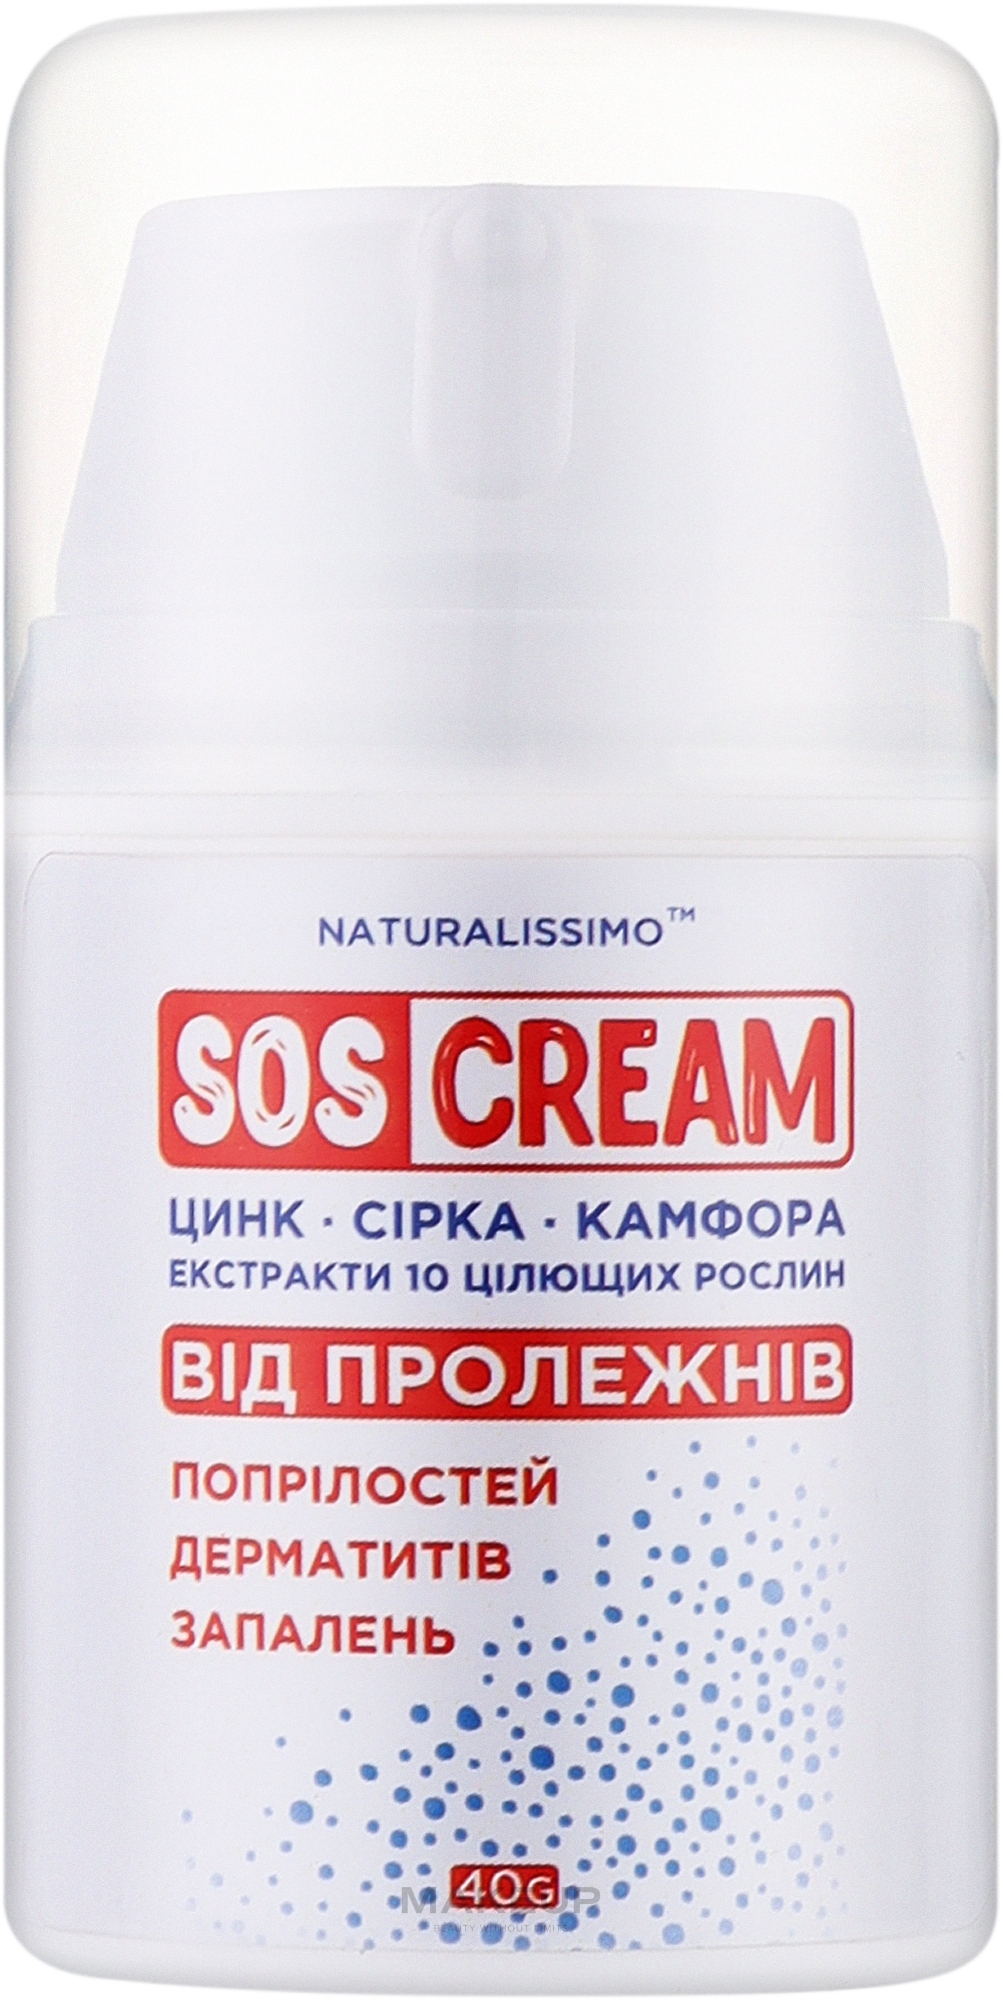 SOS крем від пролежнів, попрілостей, дерматиту, запалень - Naturalissimo SOS Cream — фото 40g